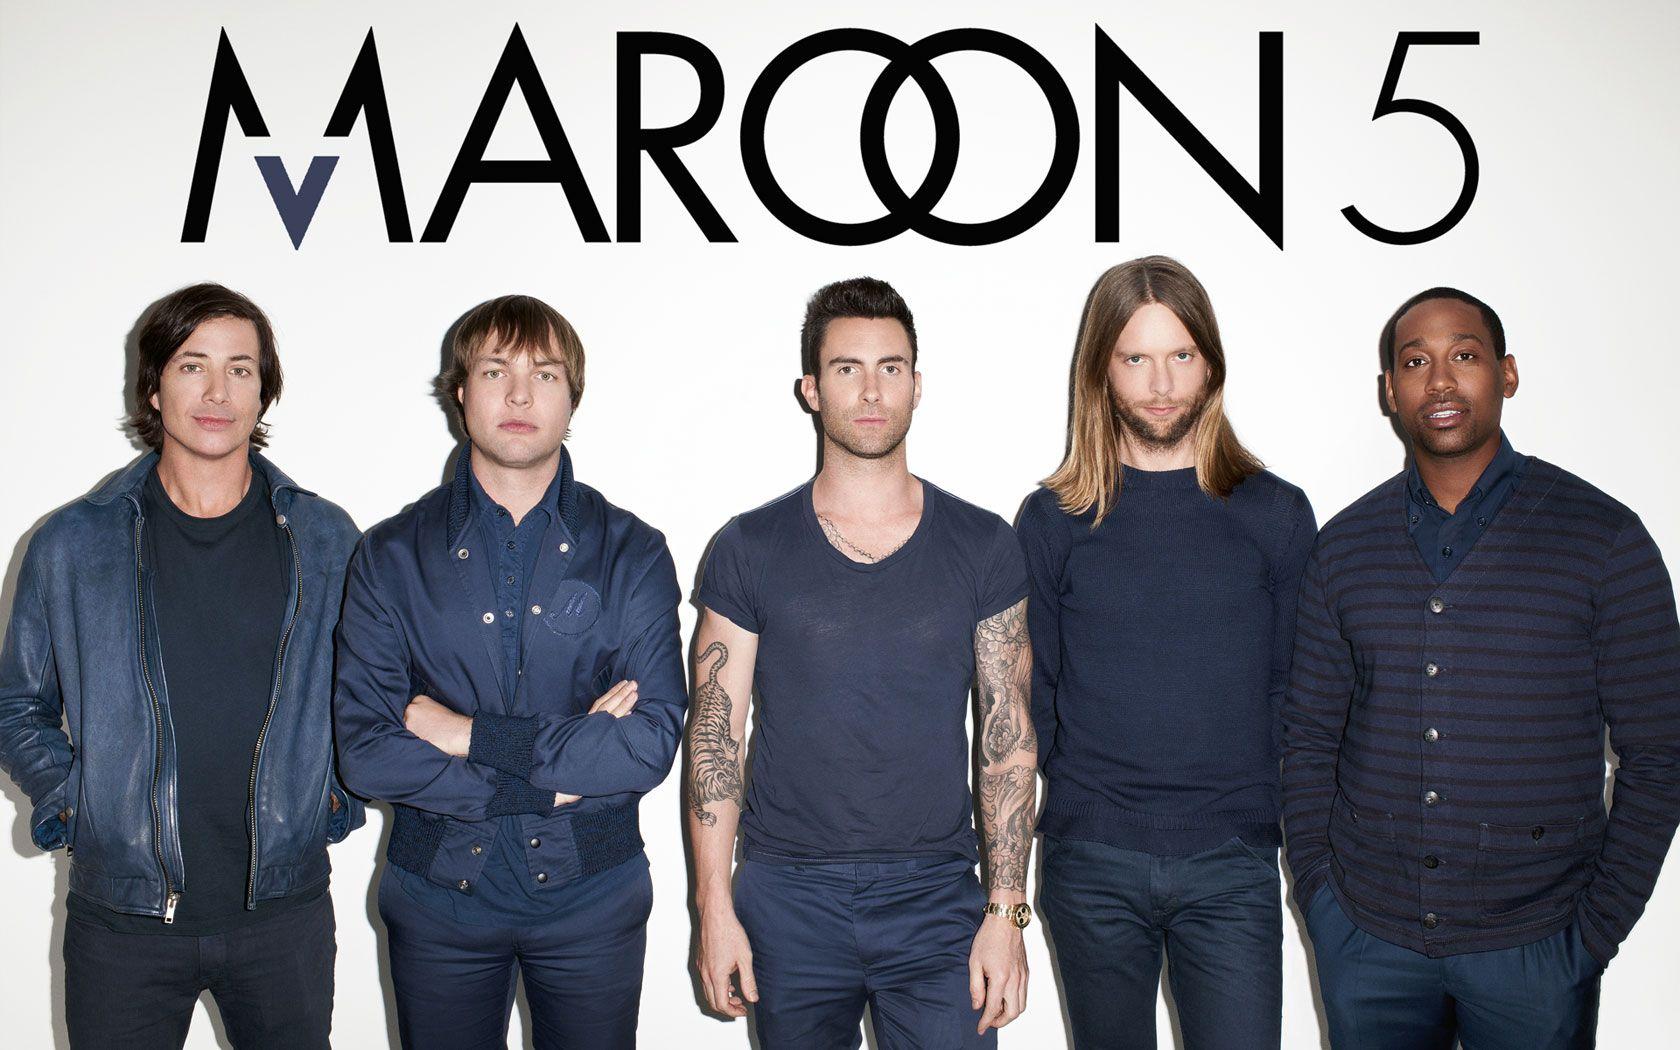 Maroon 5 Image Galleries